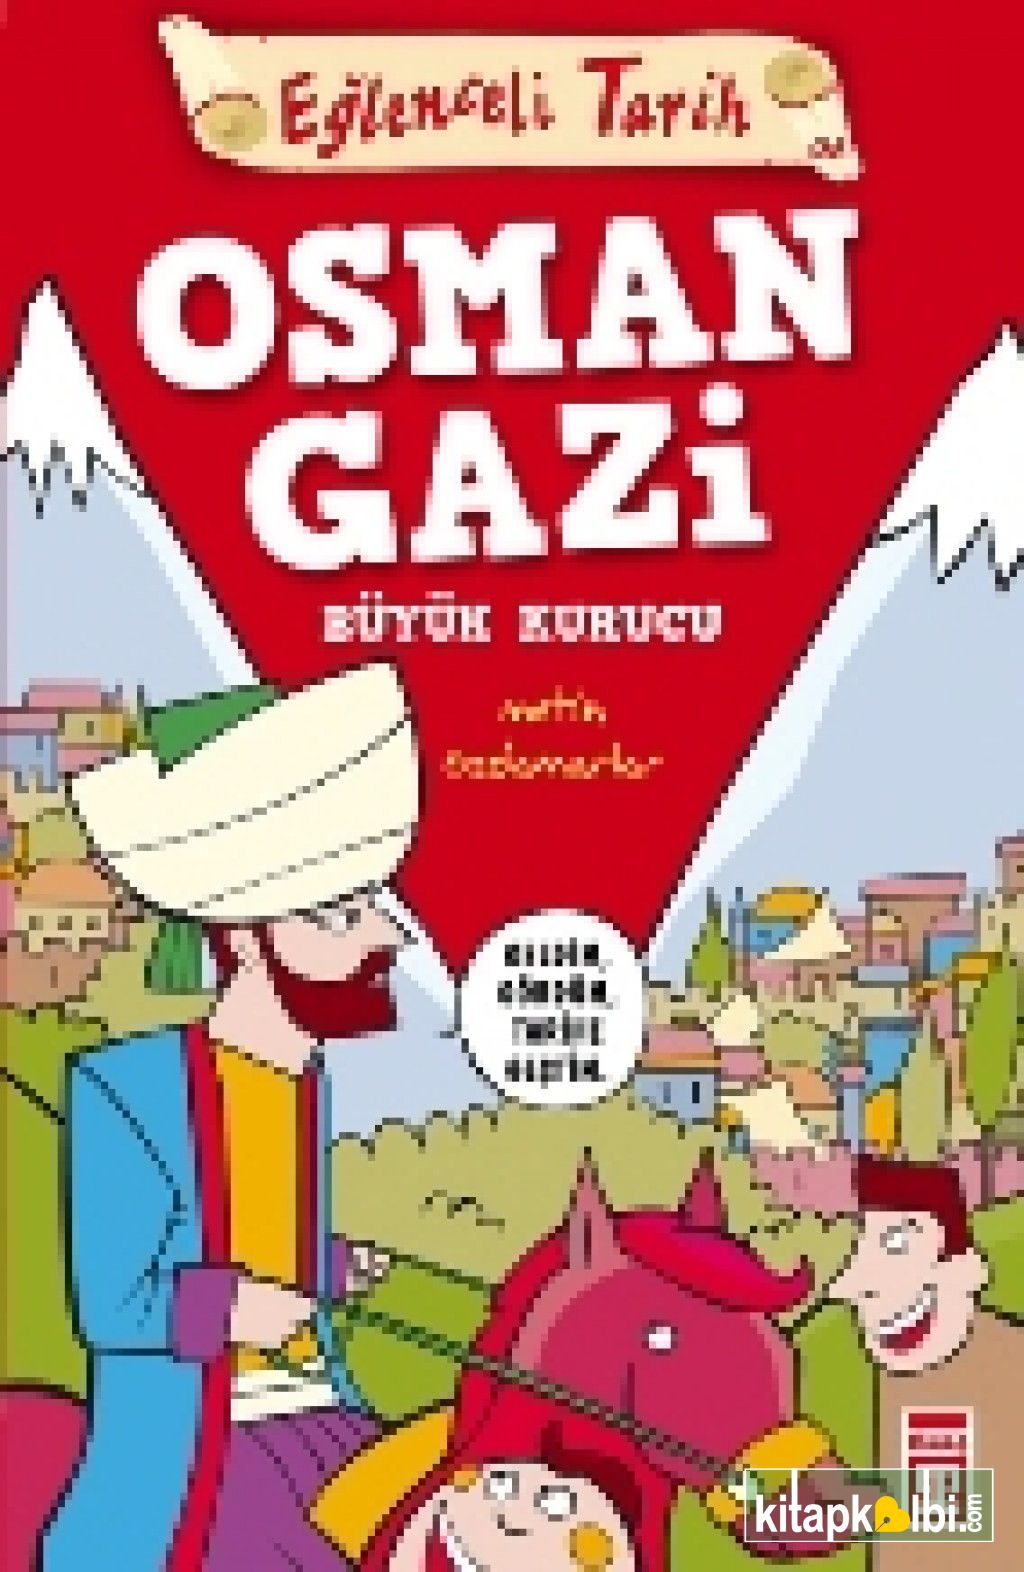 Osman Gazi  Büyük Kurucu